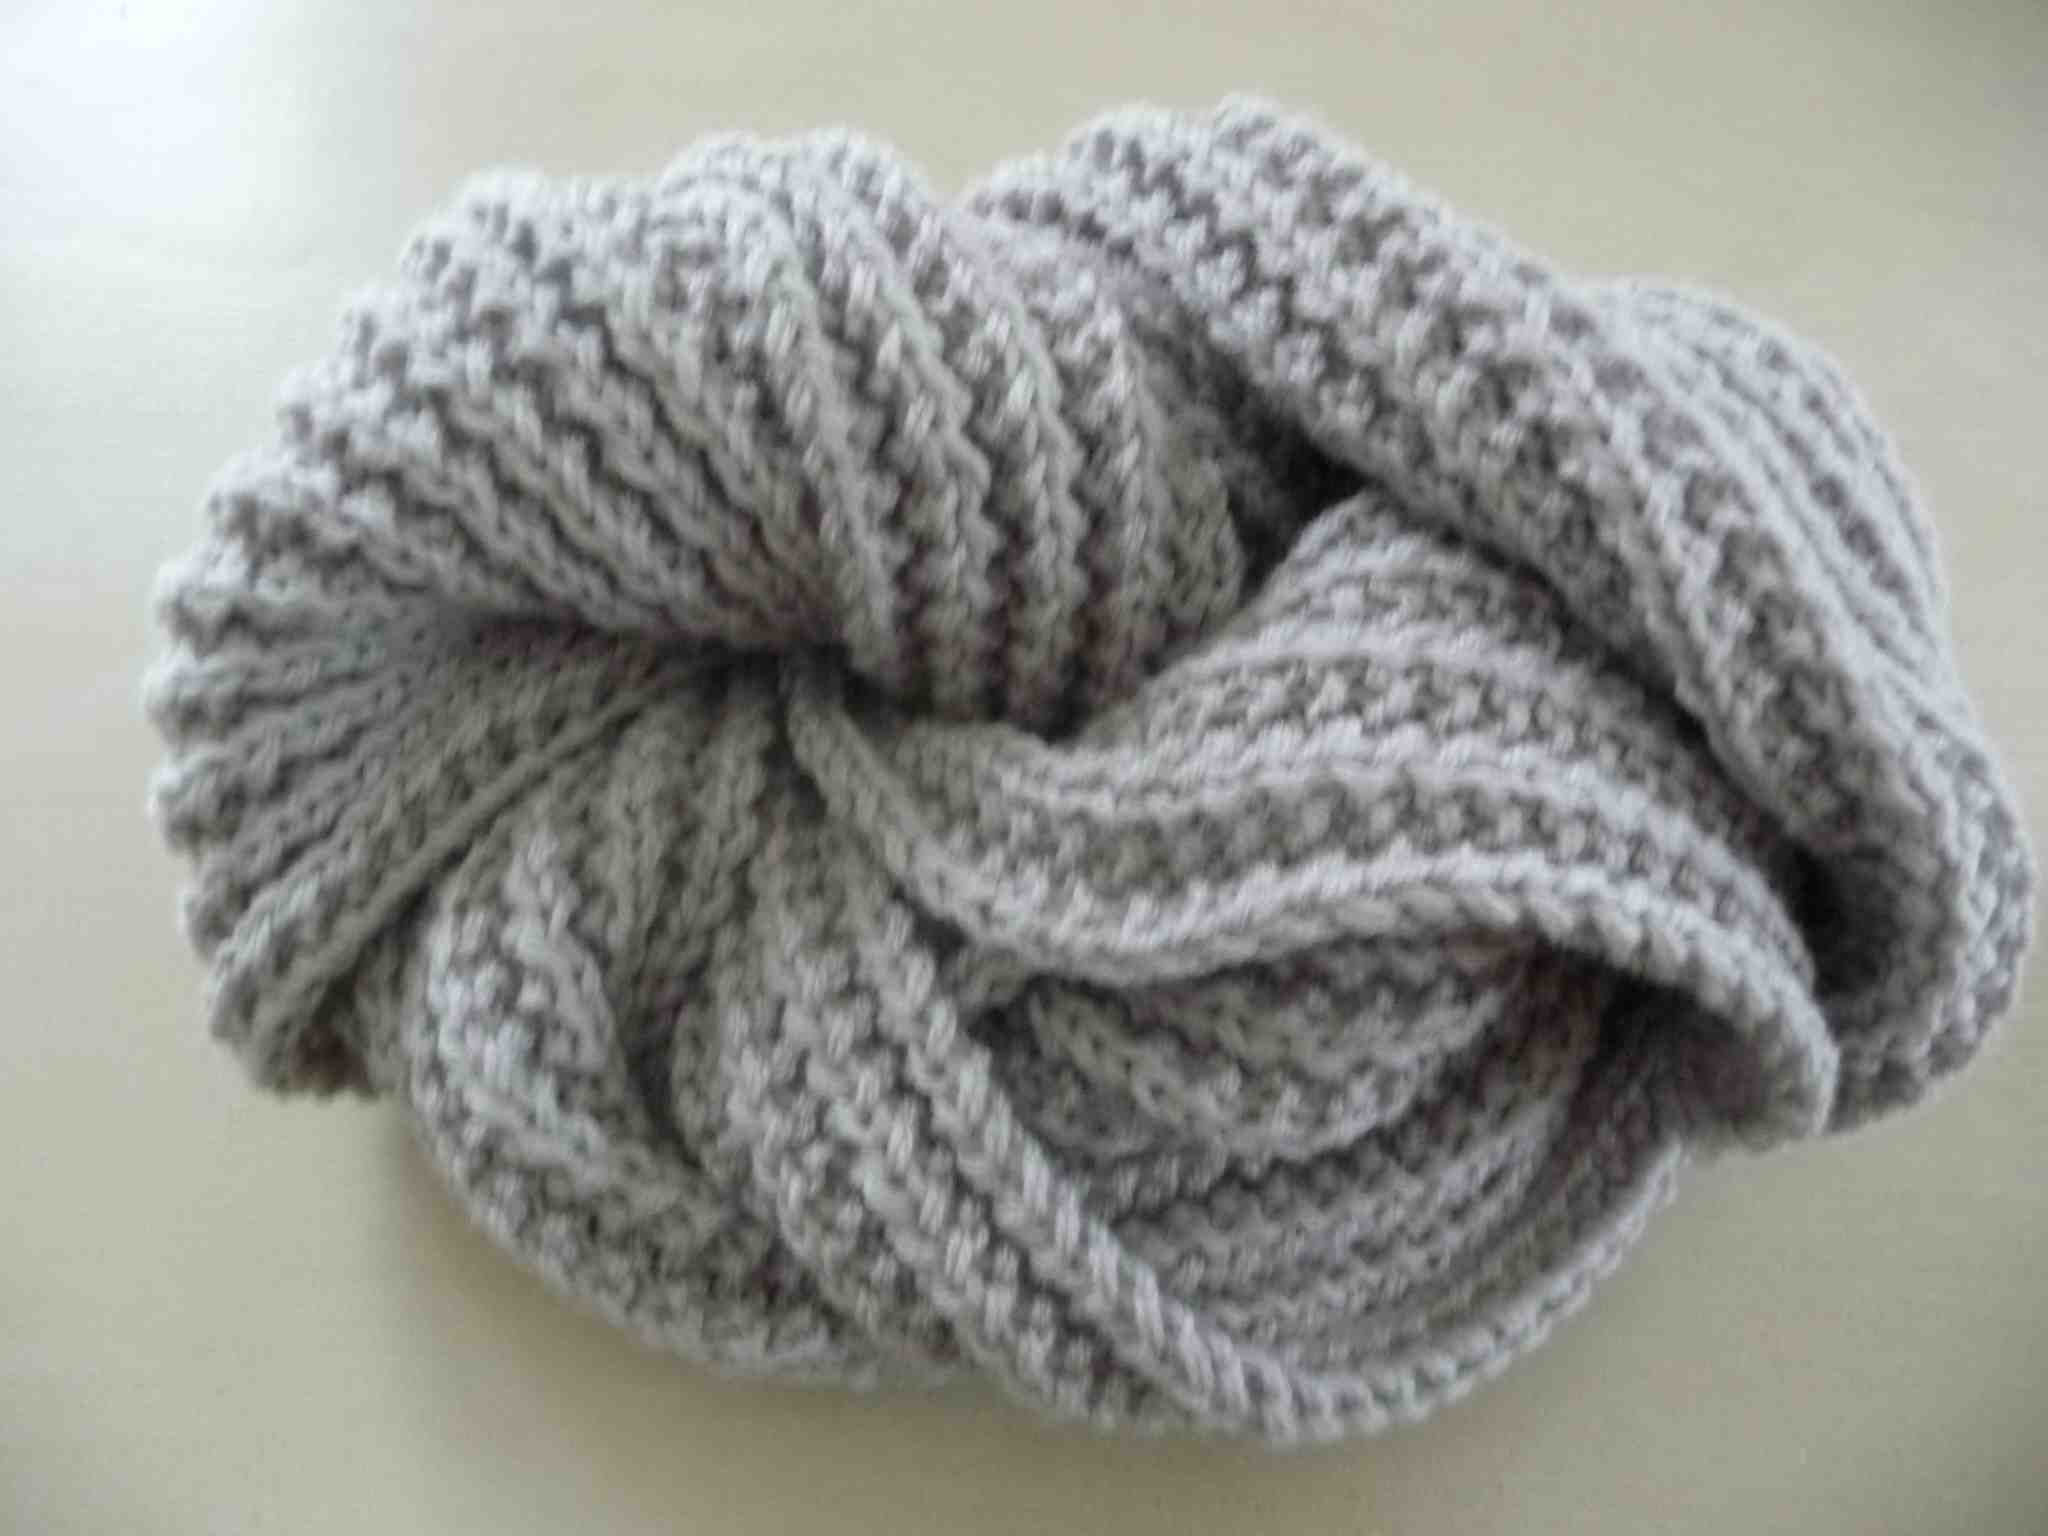 Comment faire une écharpe en tricot facile?